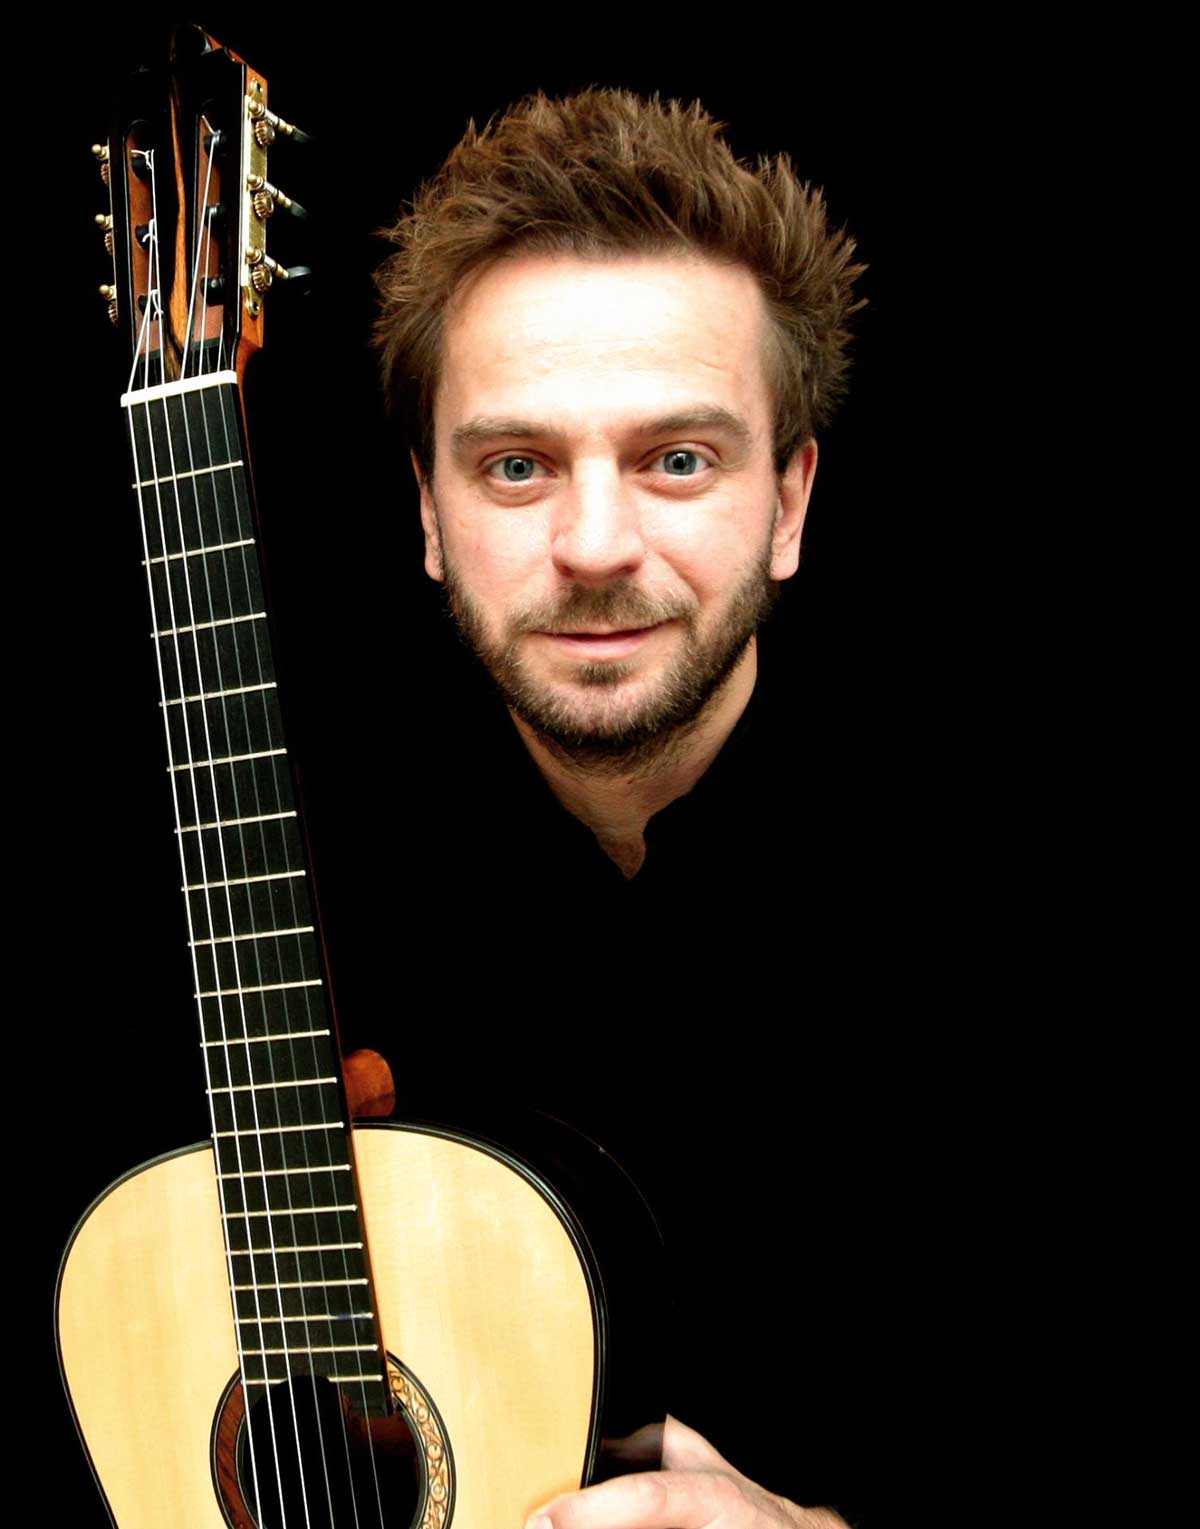 Marcin Dylla with a guitar